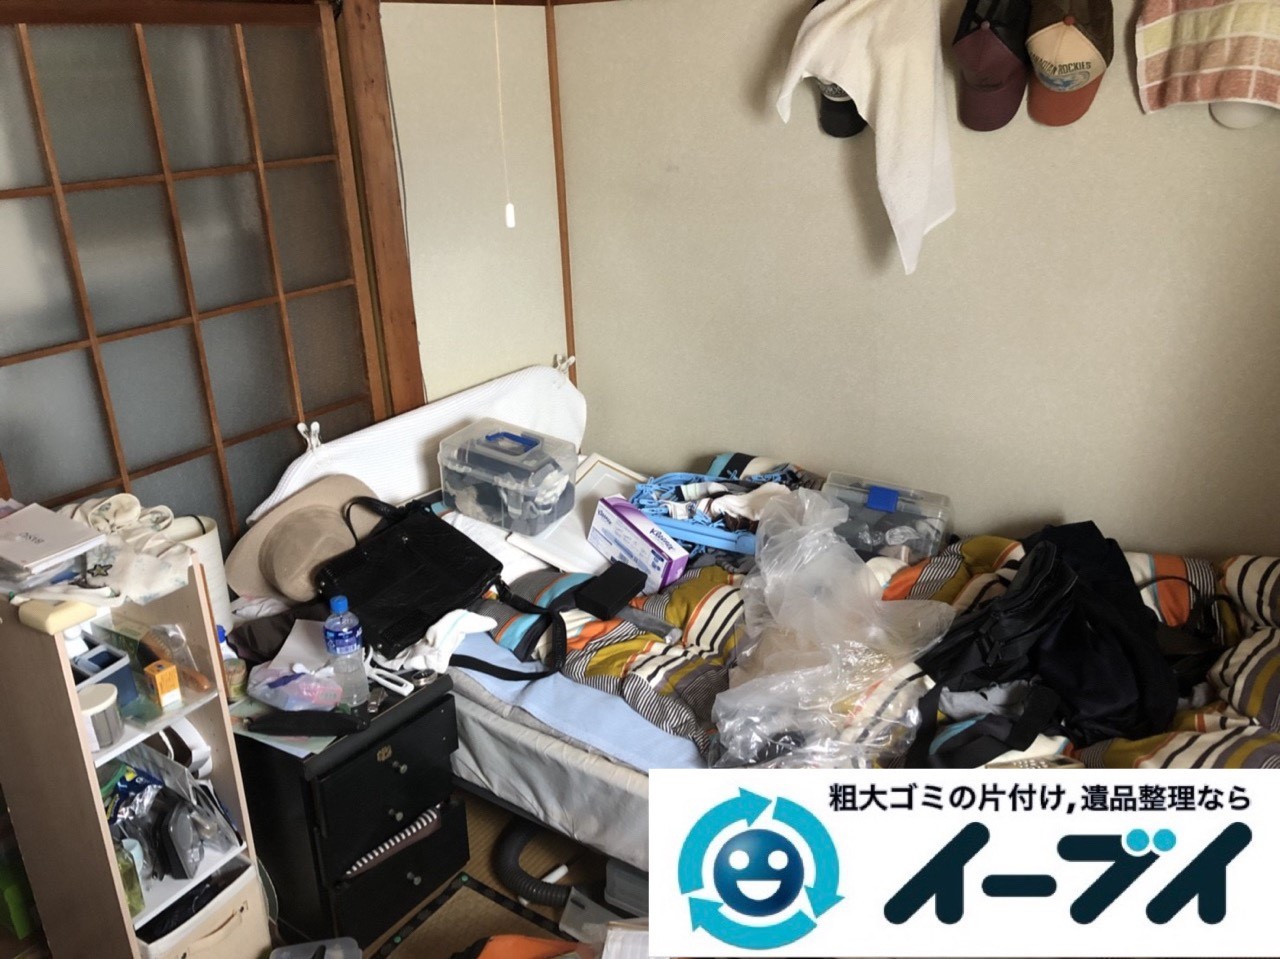 2019年5月5日大阪府大阪市浪速区で引越しに伴い、お家の家財道具を一式処分しました。写真4